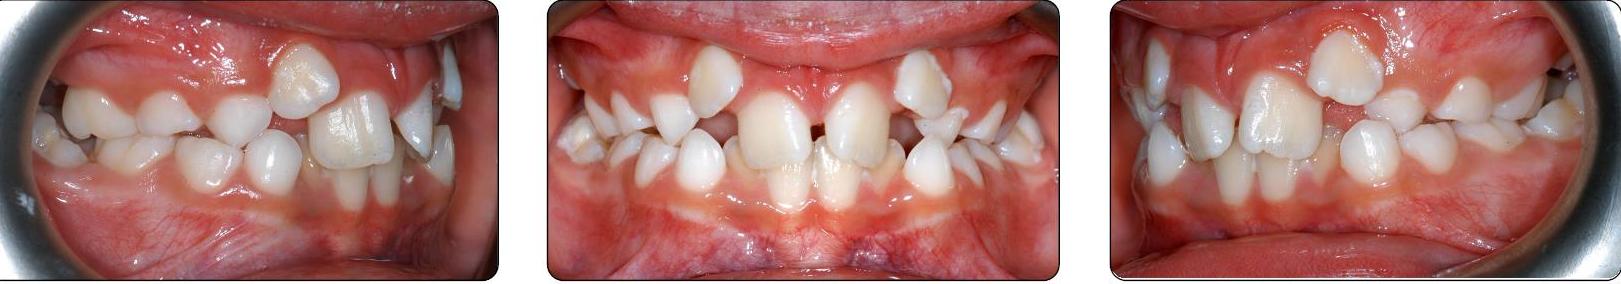 teeth before Phase I